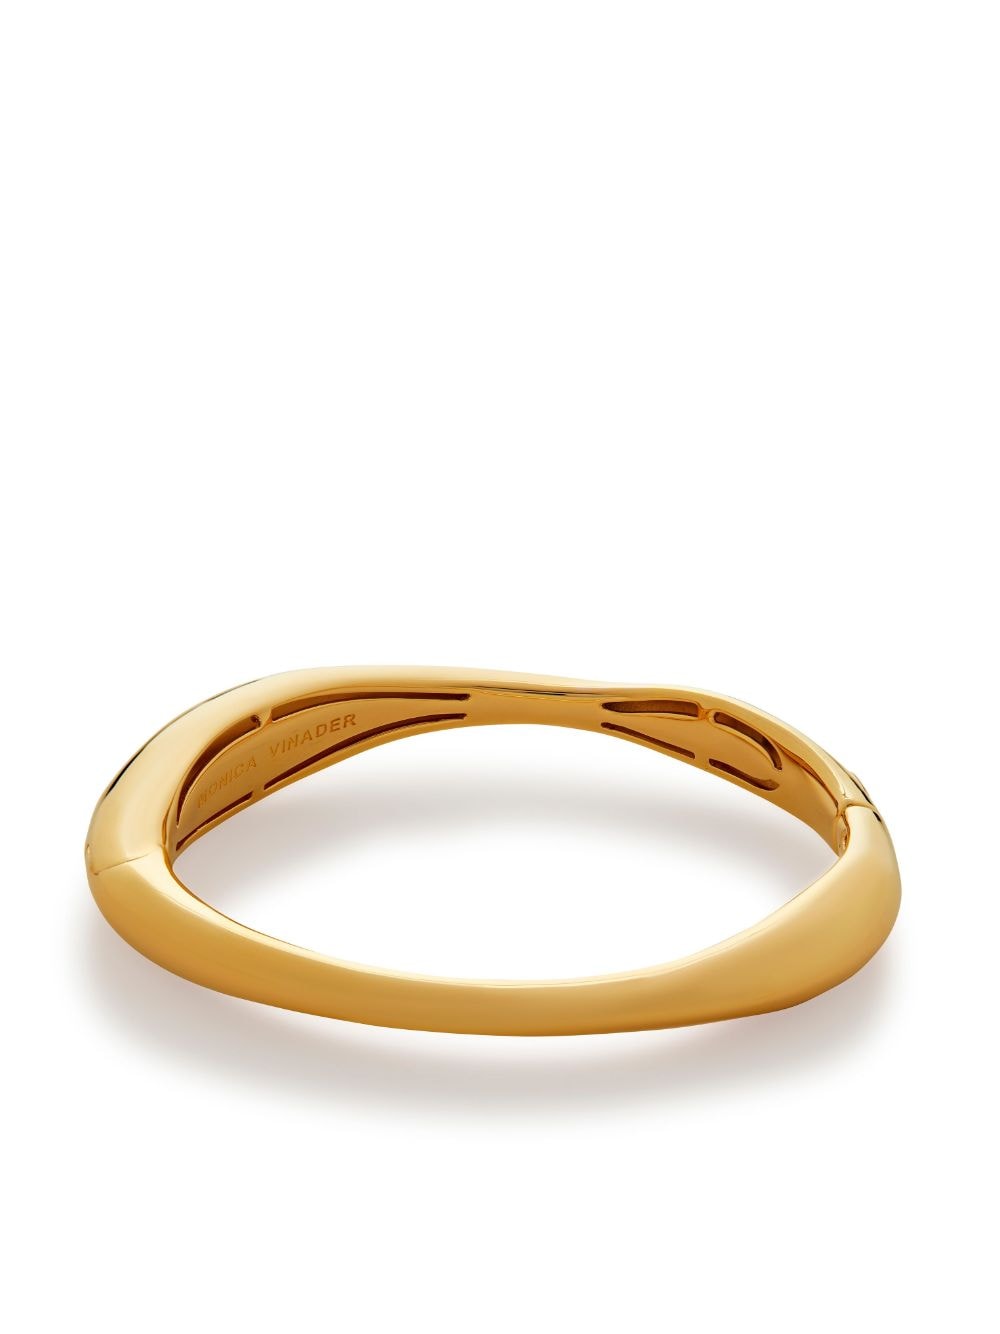 Monica Vinader Nura Reef wide bangle bracelet - Gold von Monica Vinader